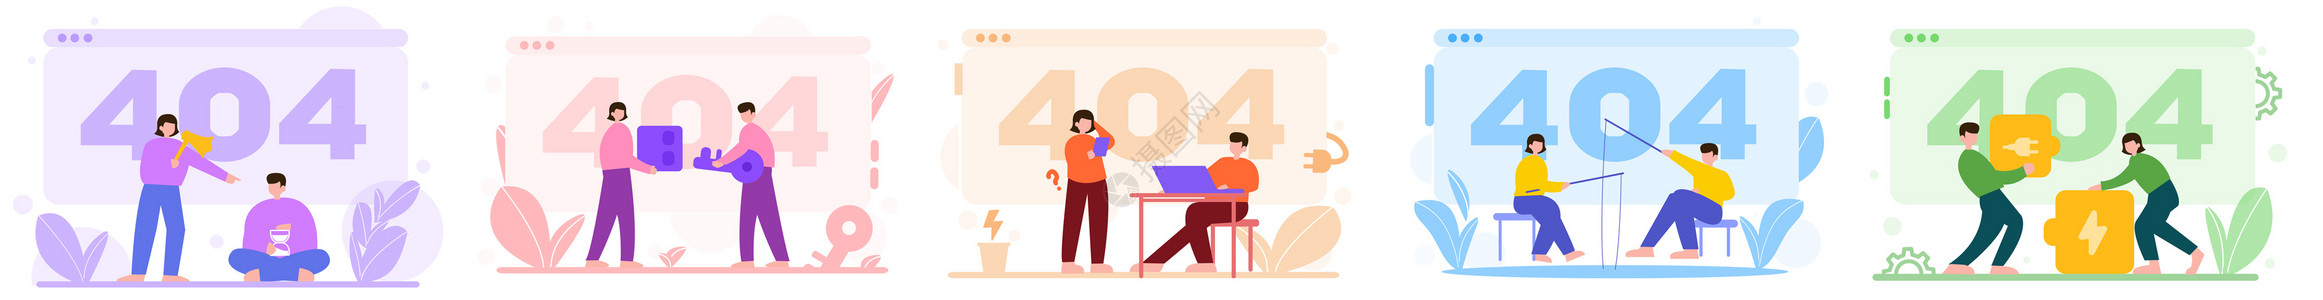 彩色404等待电源催促人物场景插图高清图片